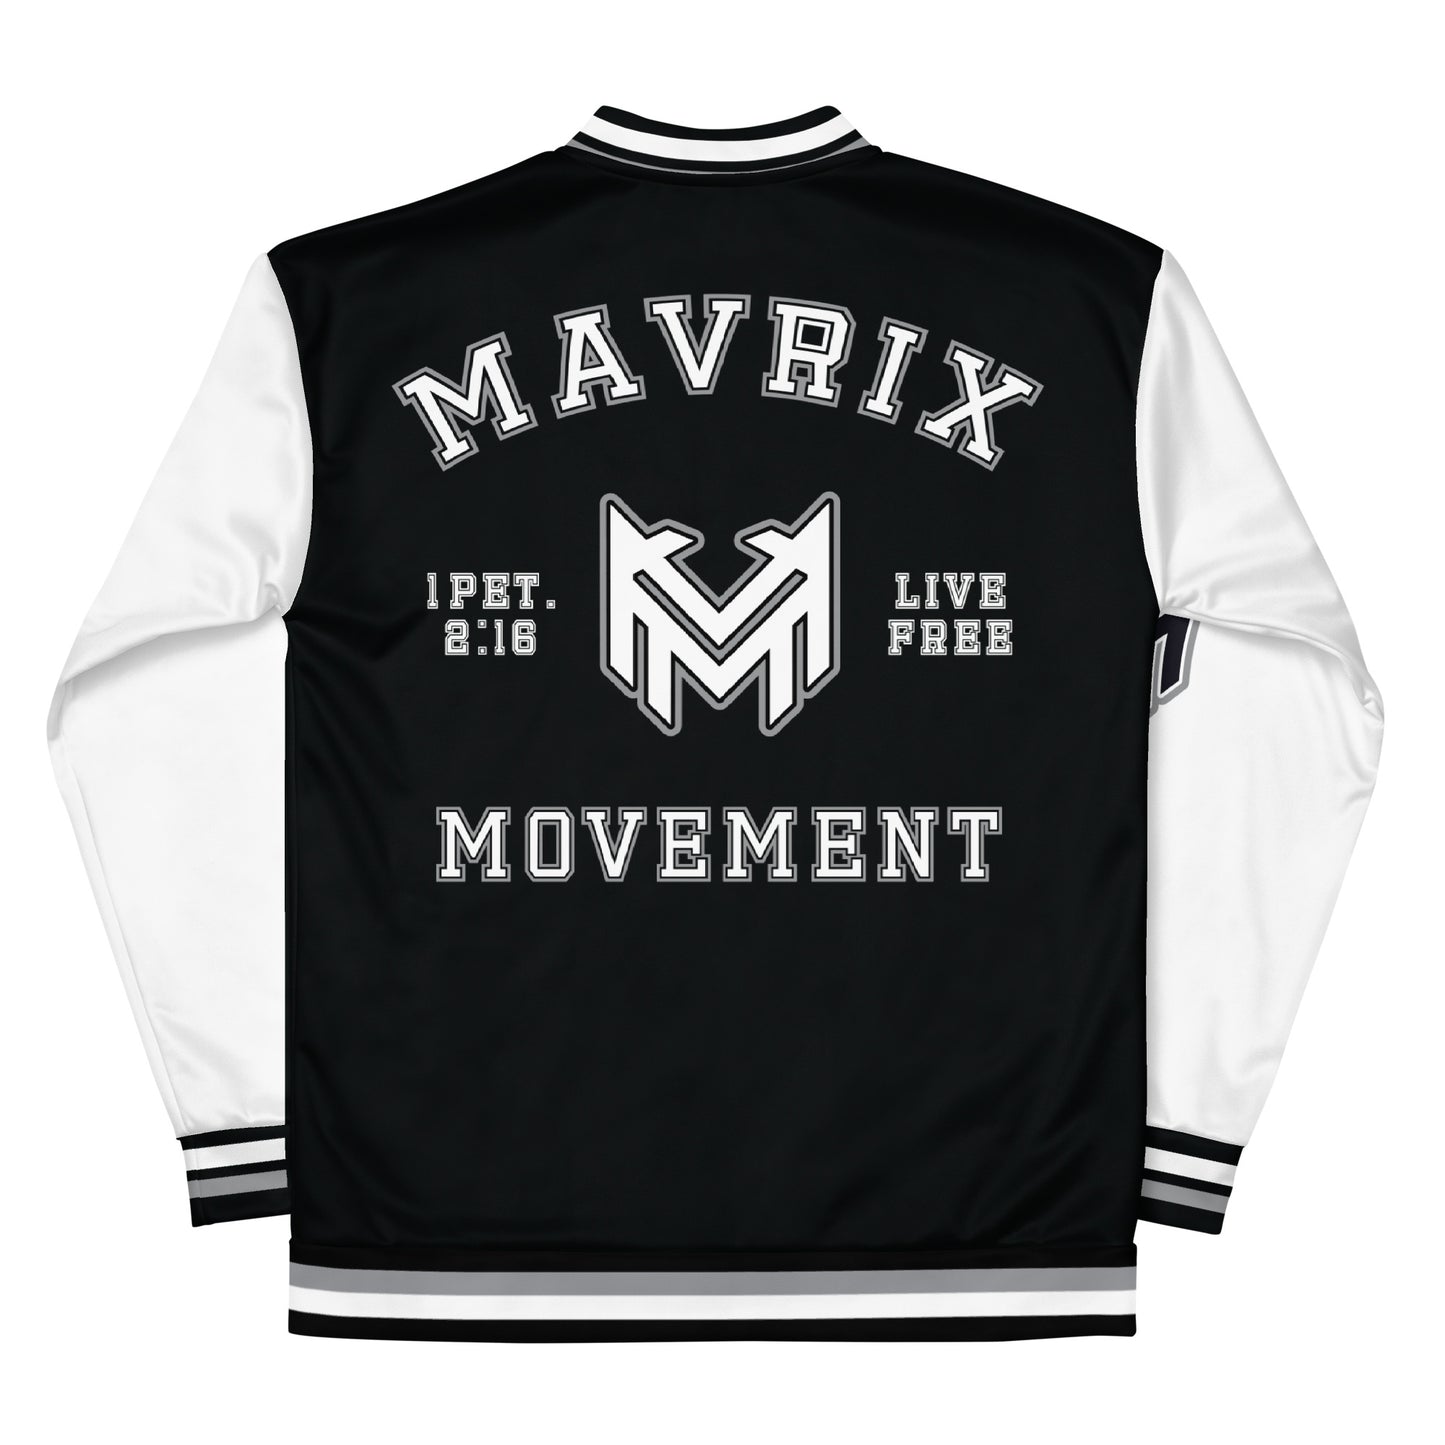 Mavrix Varsity Black Bomber Jacket